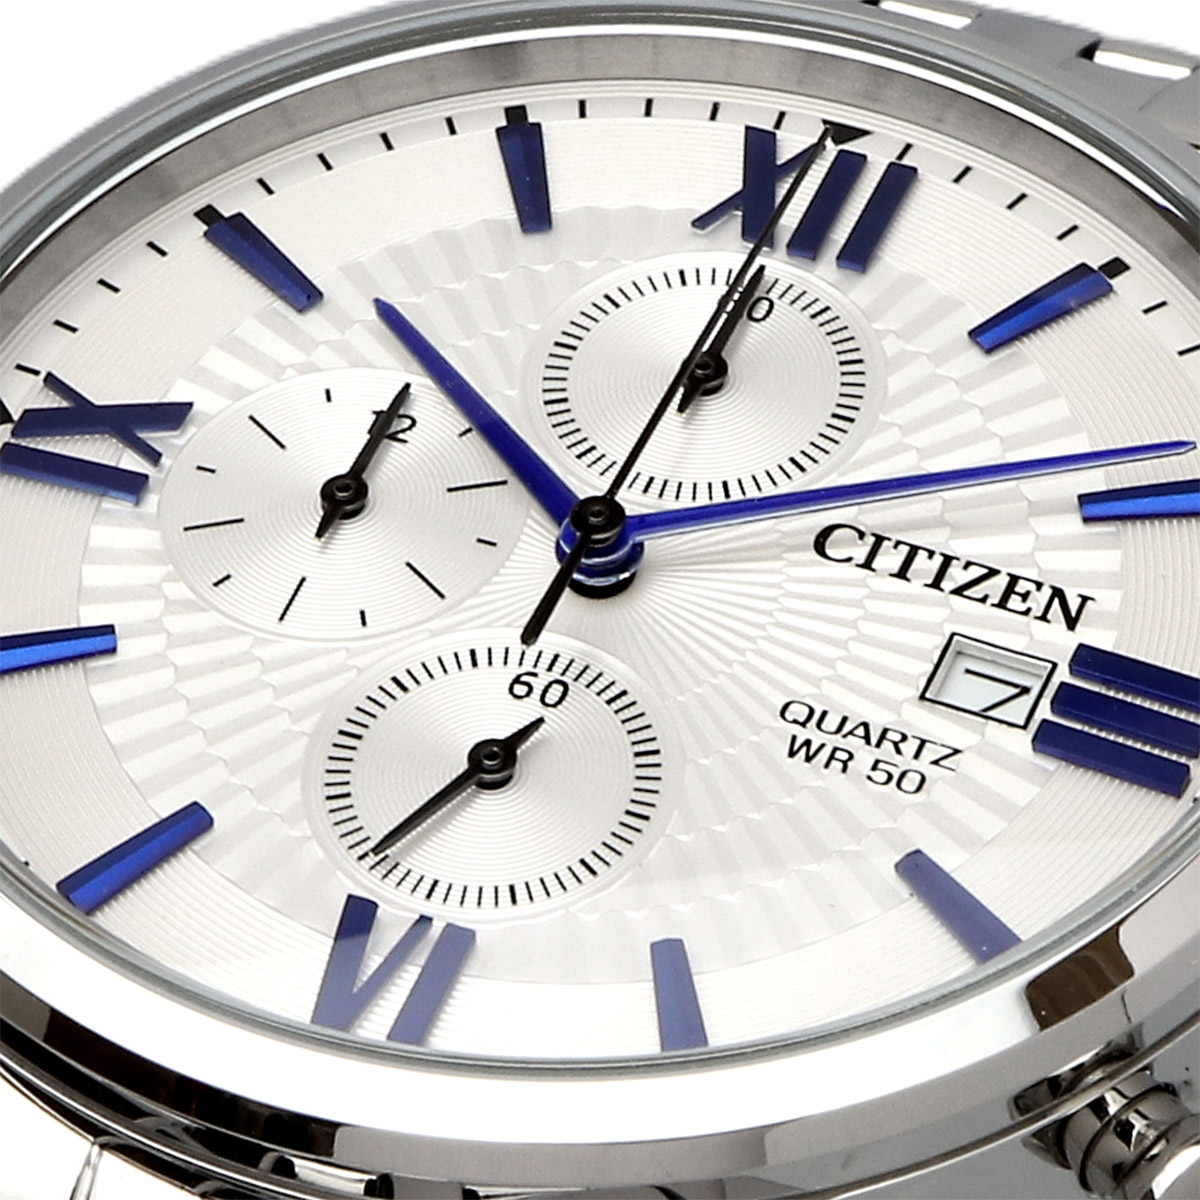 CITIZEN シチズン 腕時計 メンズ 海外モデル クォーツ ビジネス カジュアル AN3610-71A